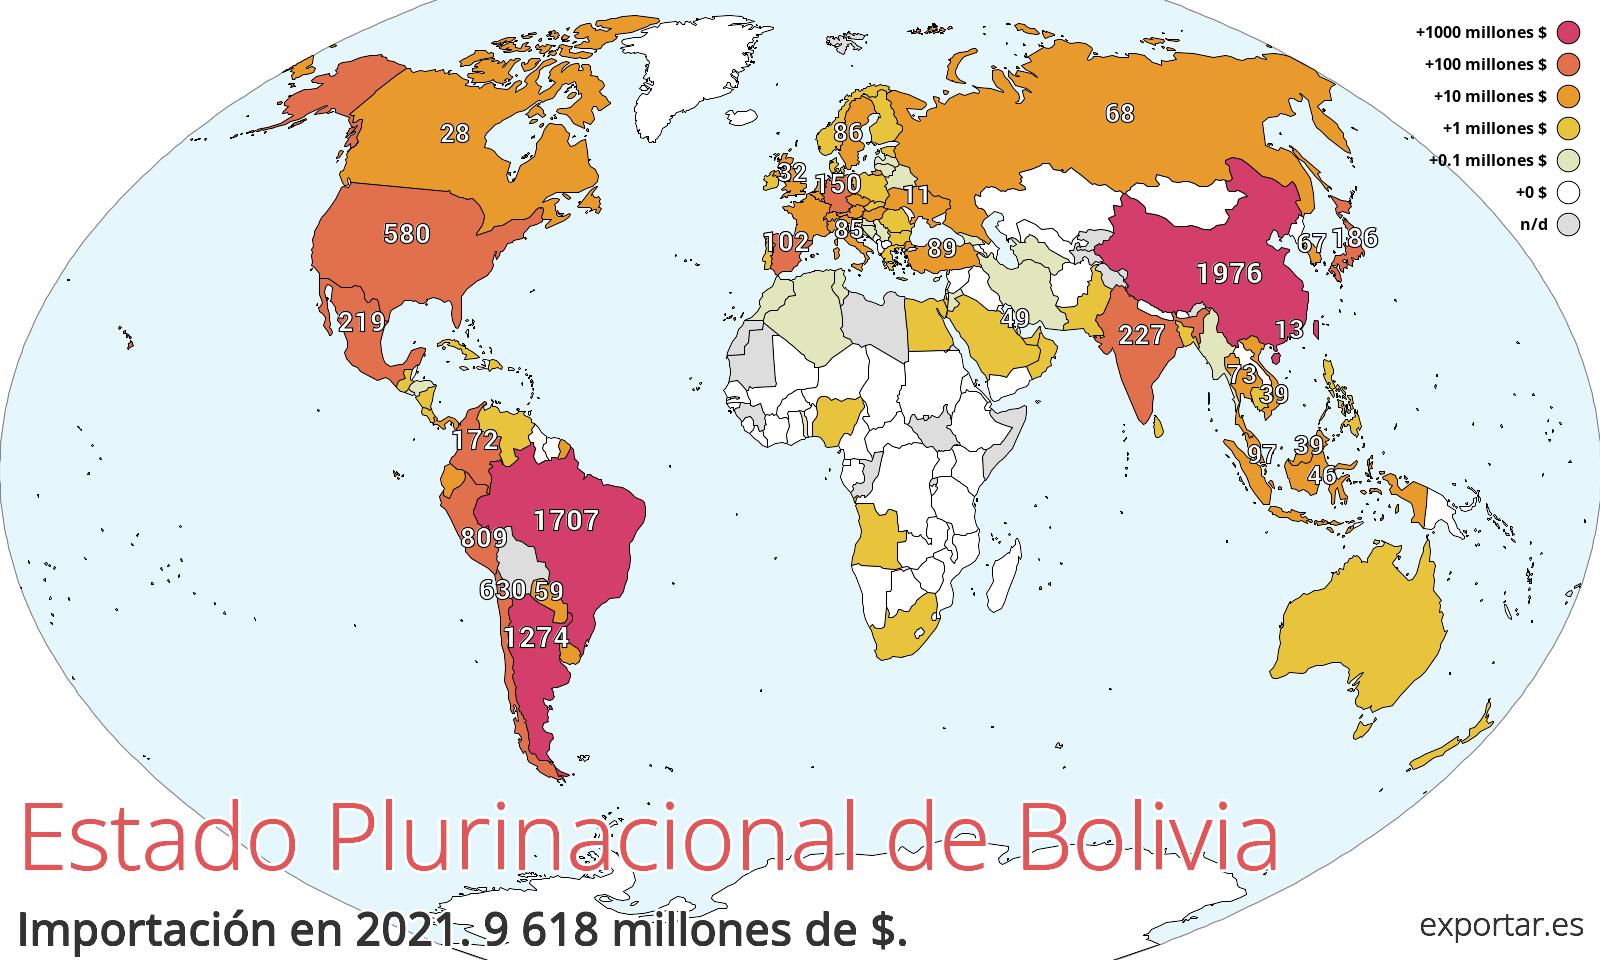 Mapa de importación de Estado Plurinacional de Bolivia en 2021.